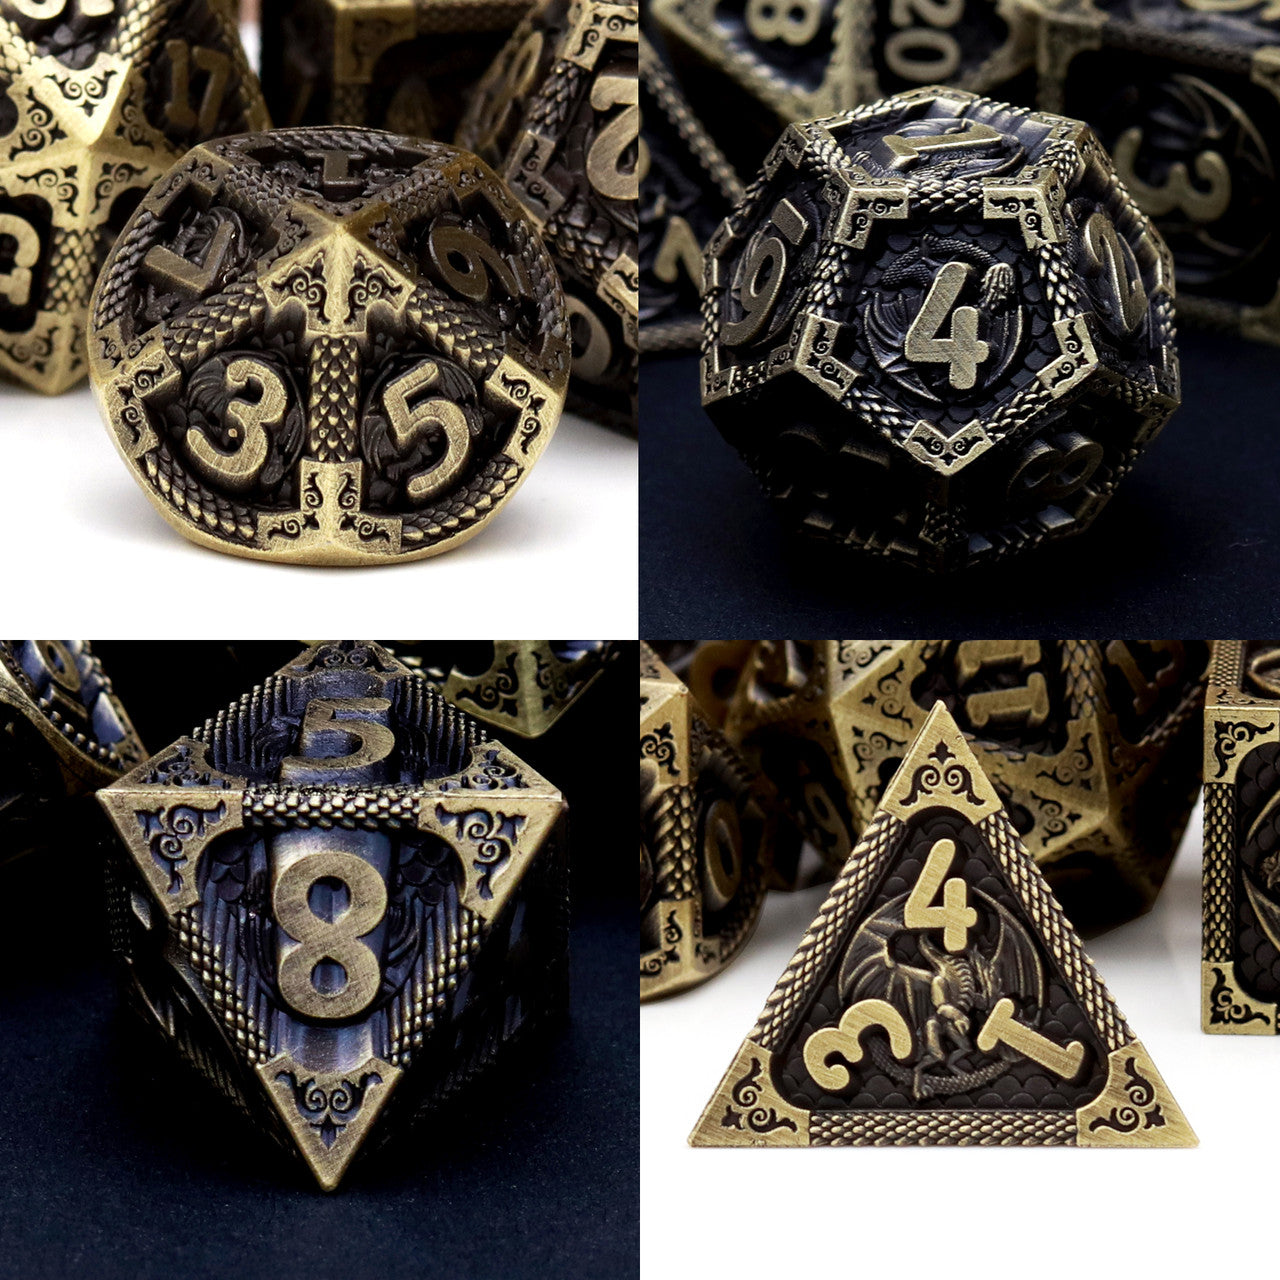 antiue bronze metal dnd dice set dragon pattern